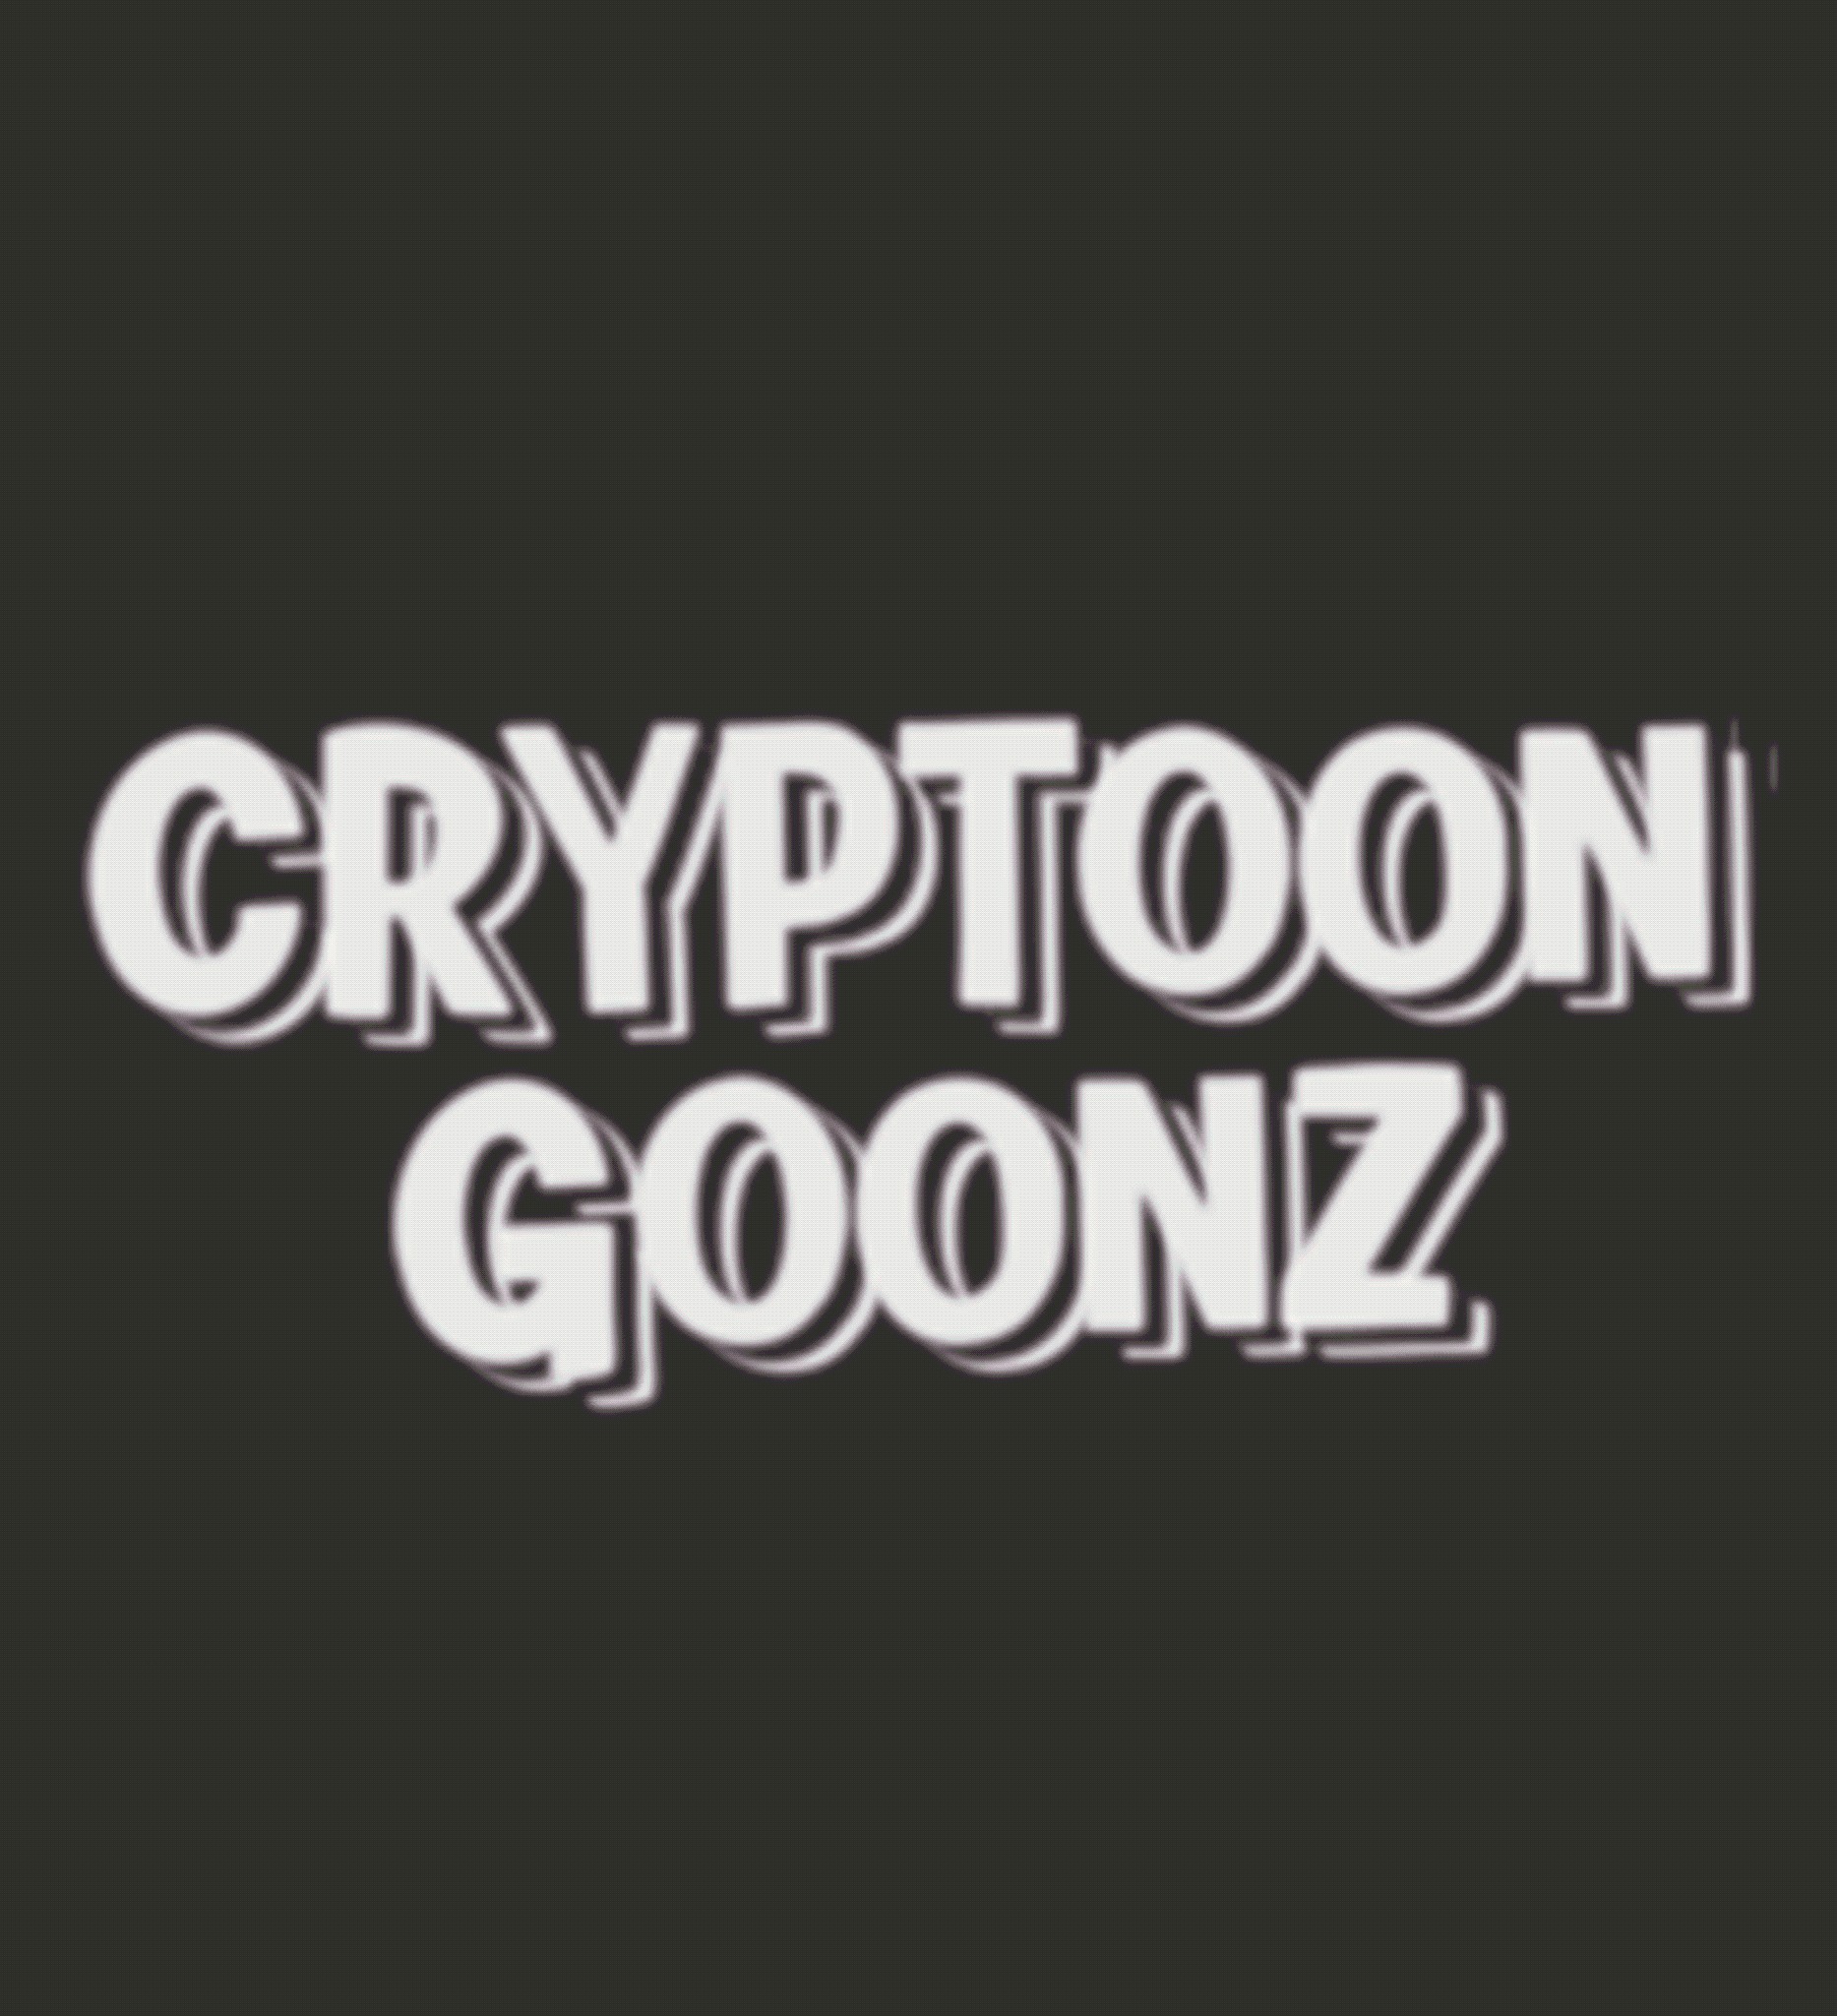 Cryptoon Goonz Pre-Reveal Art